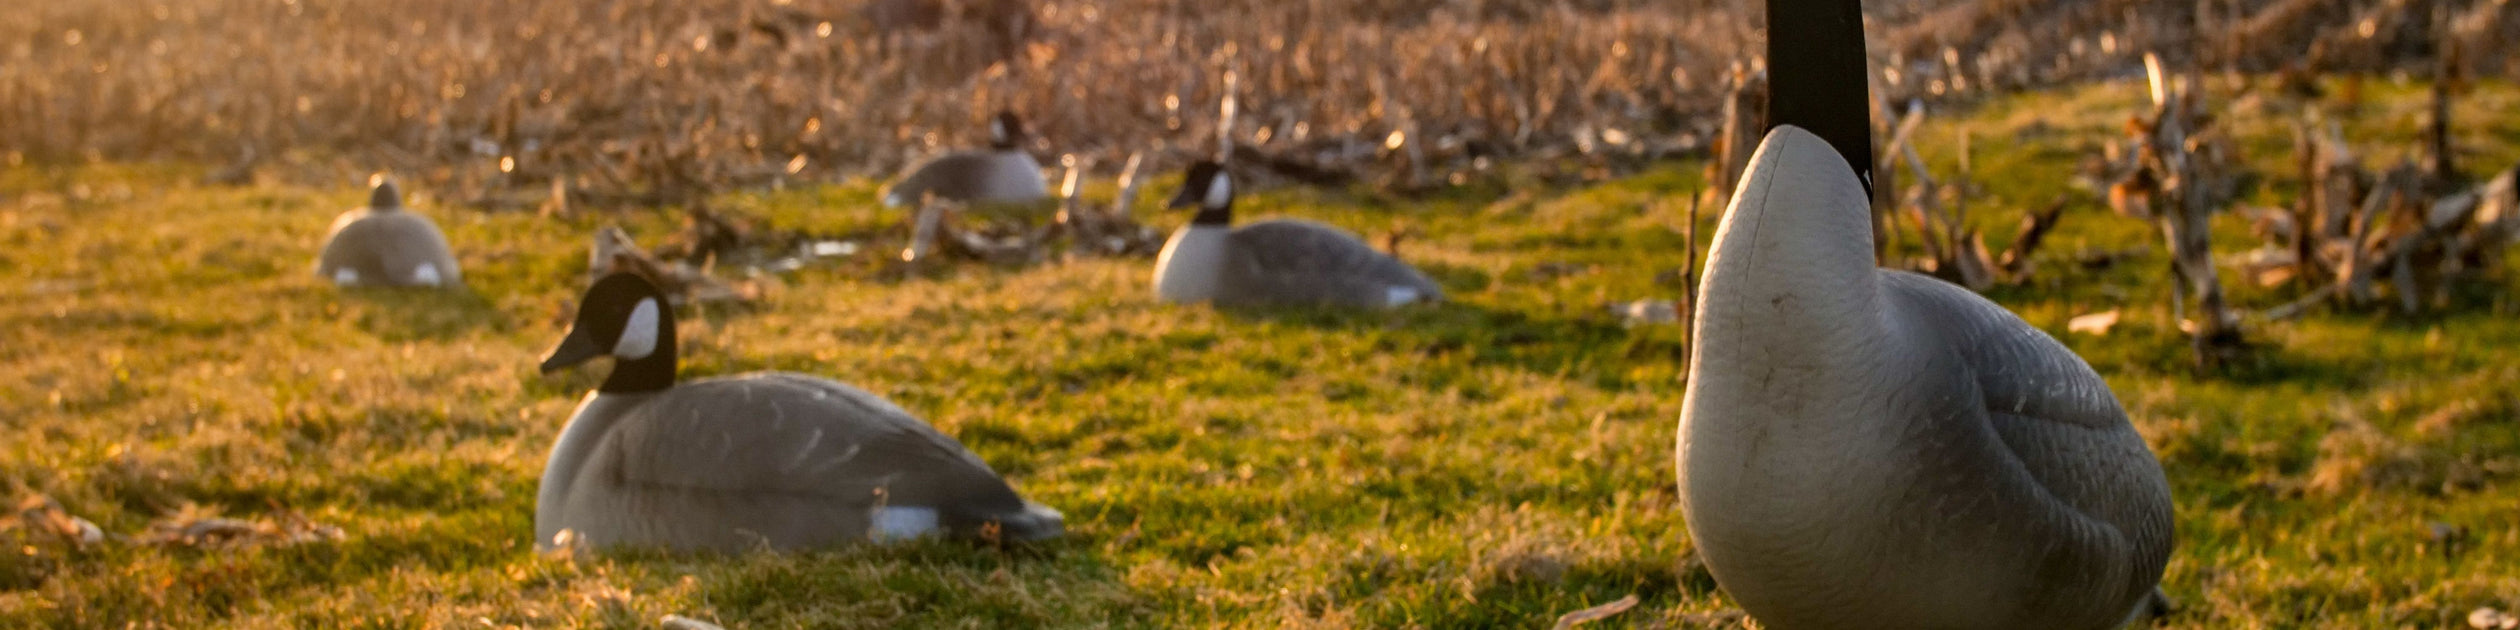 Appeau à canard : Le Migrateur